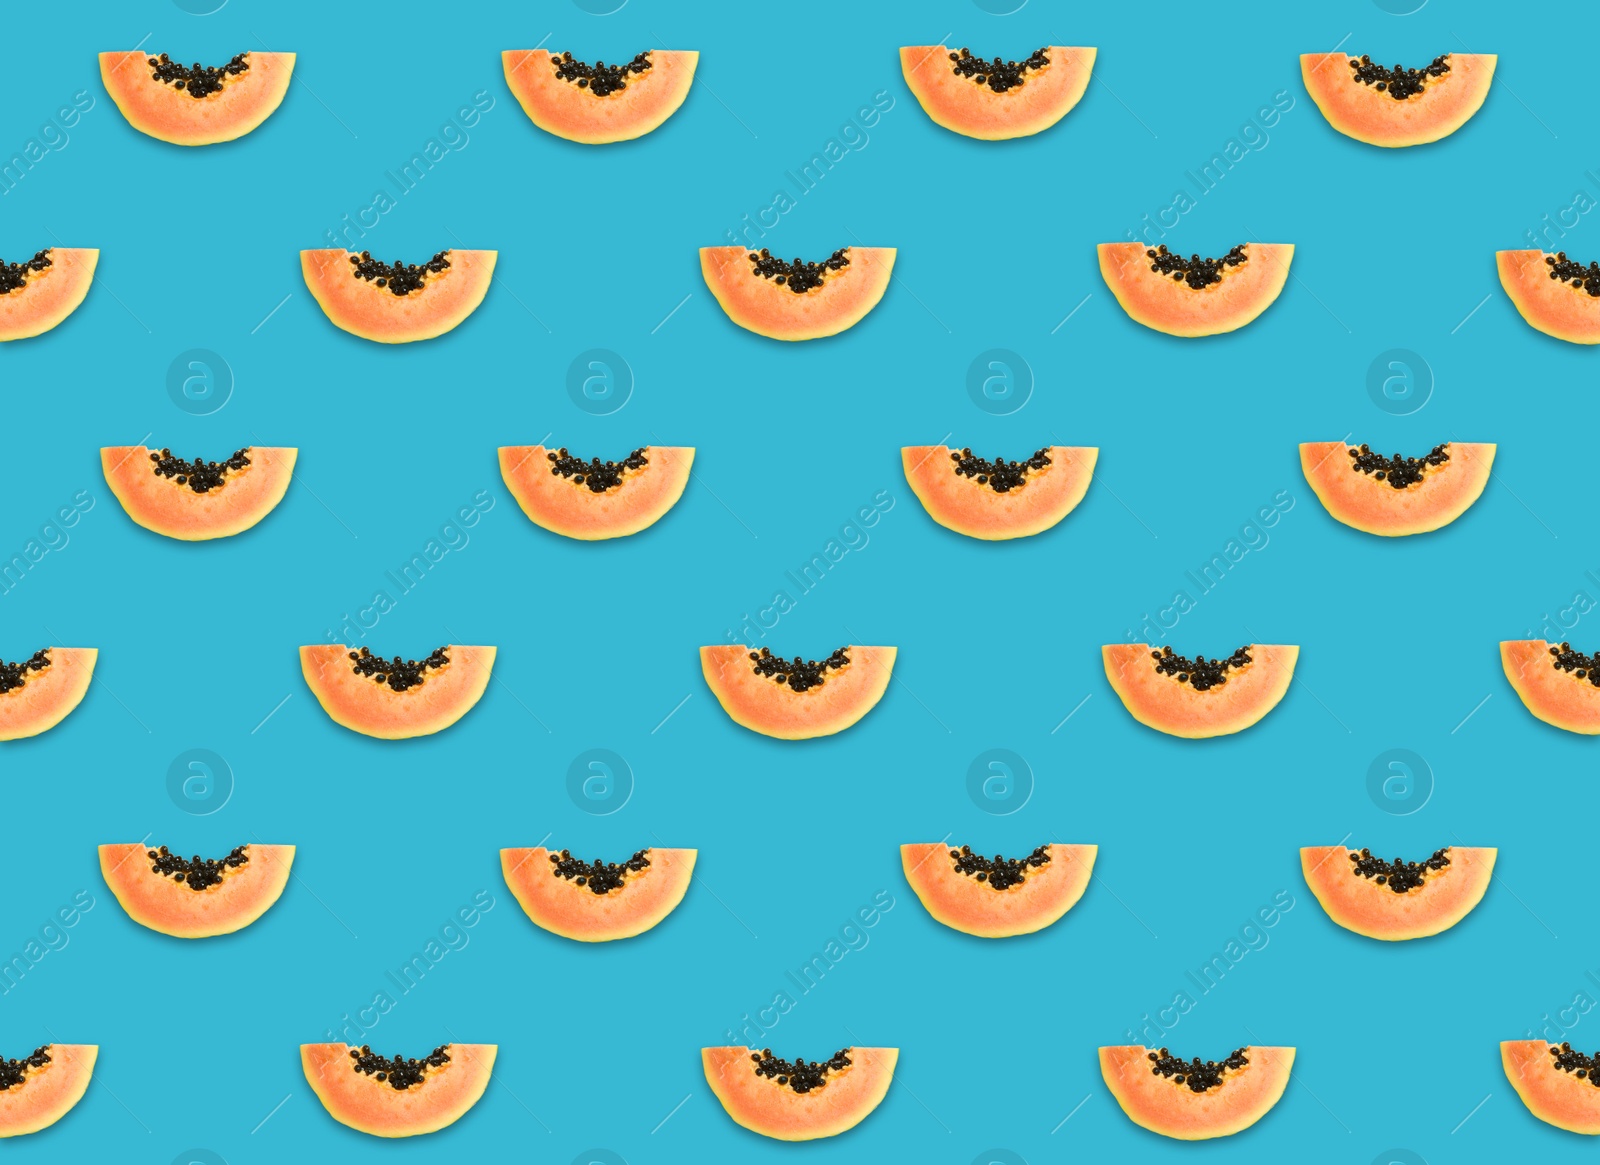 Image of Pattern of papaya slices on blue background